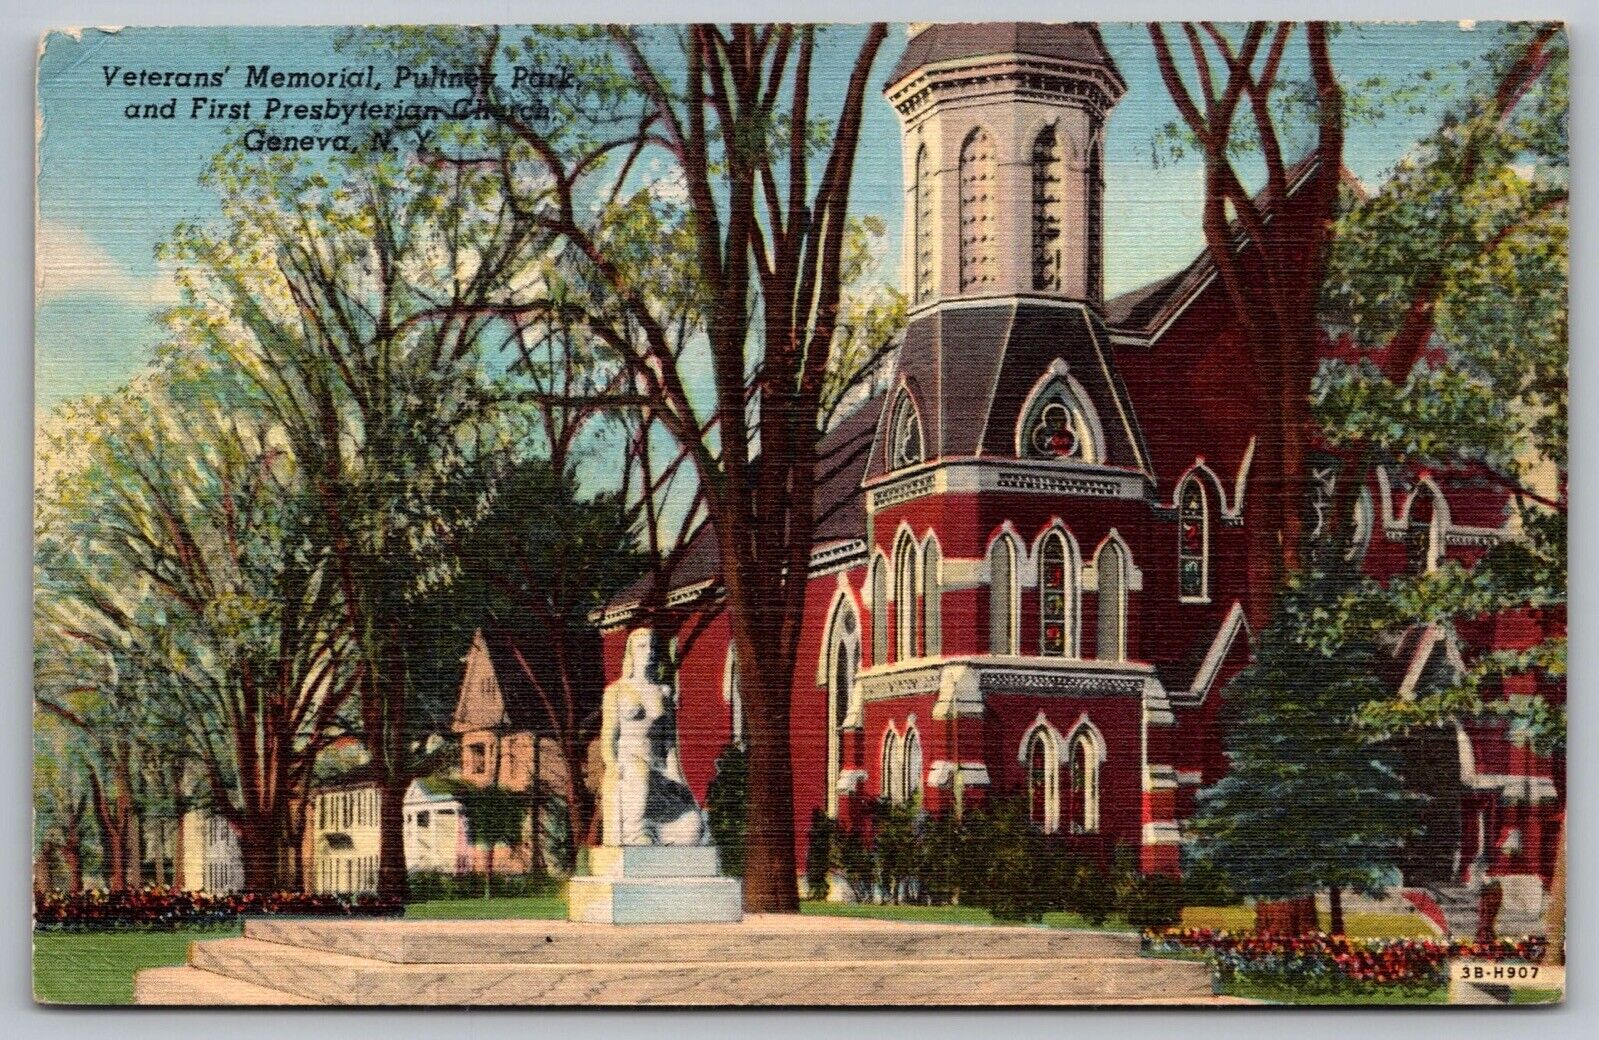 Veterans Memorial Pultney Park First Presbyterian Church Geneva NY VNG Postcard